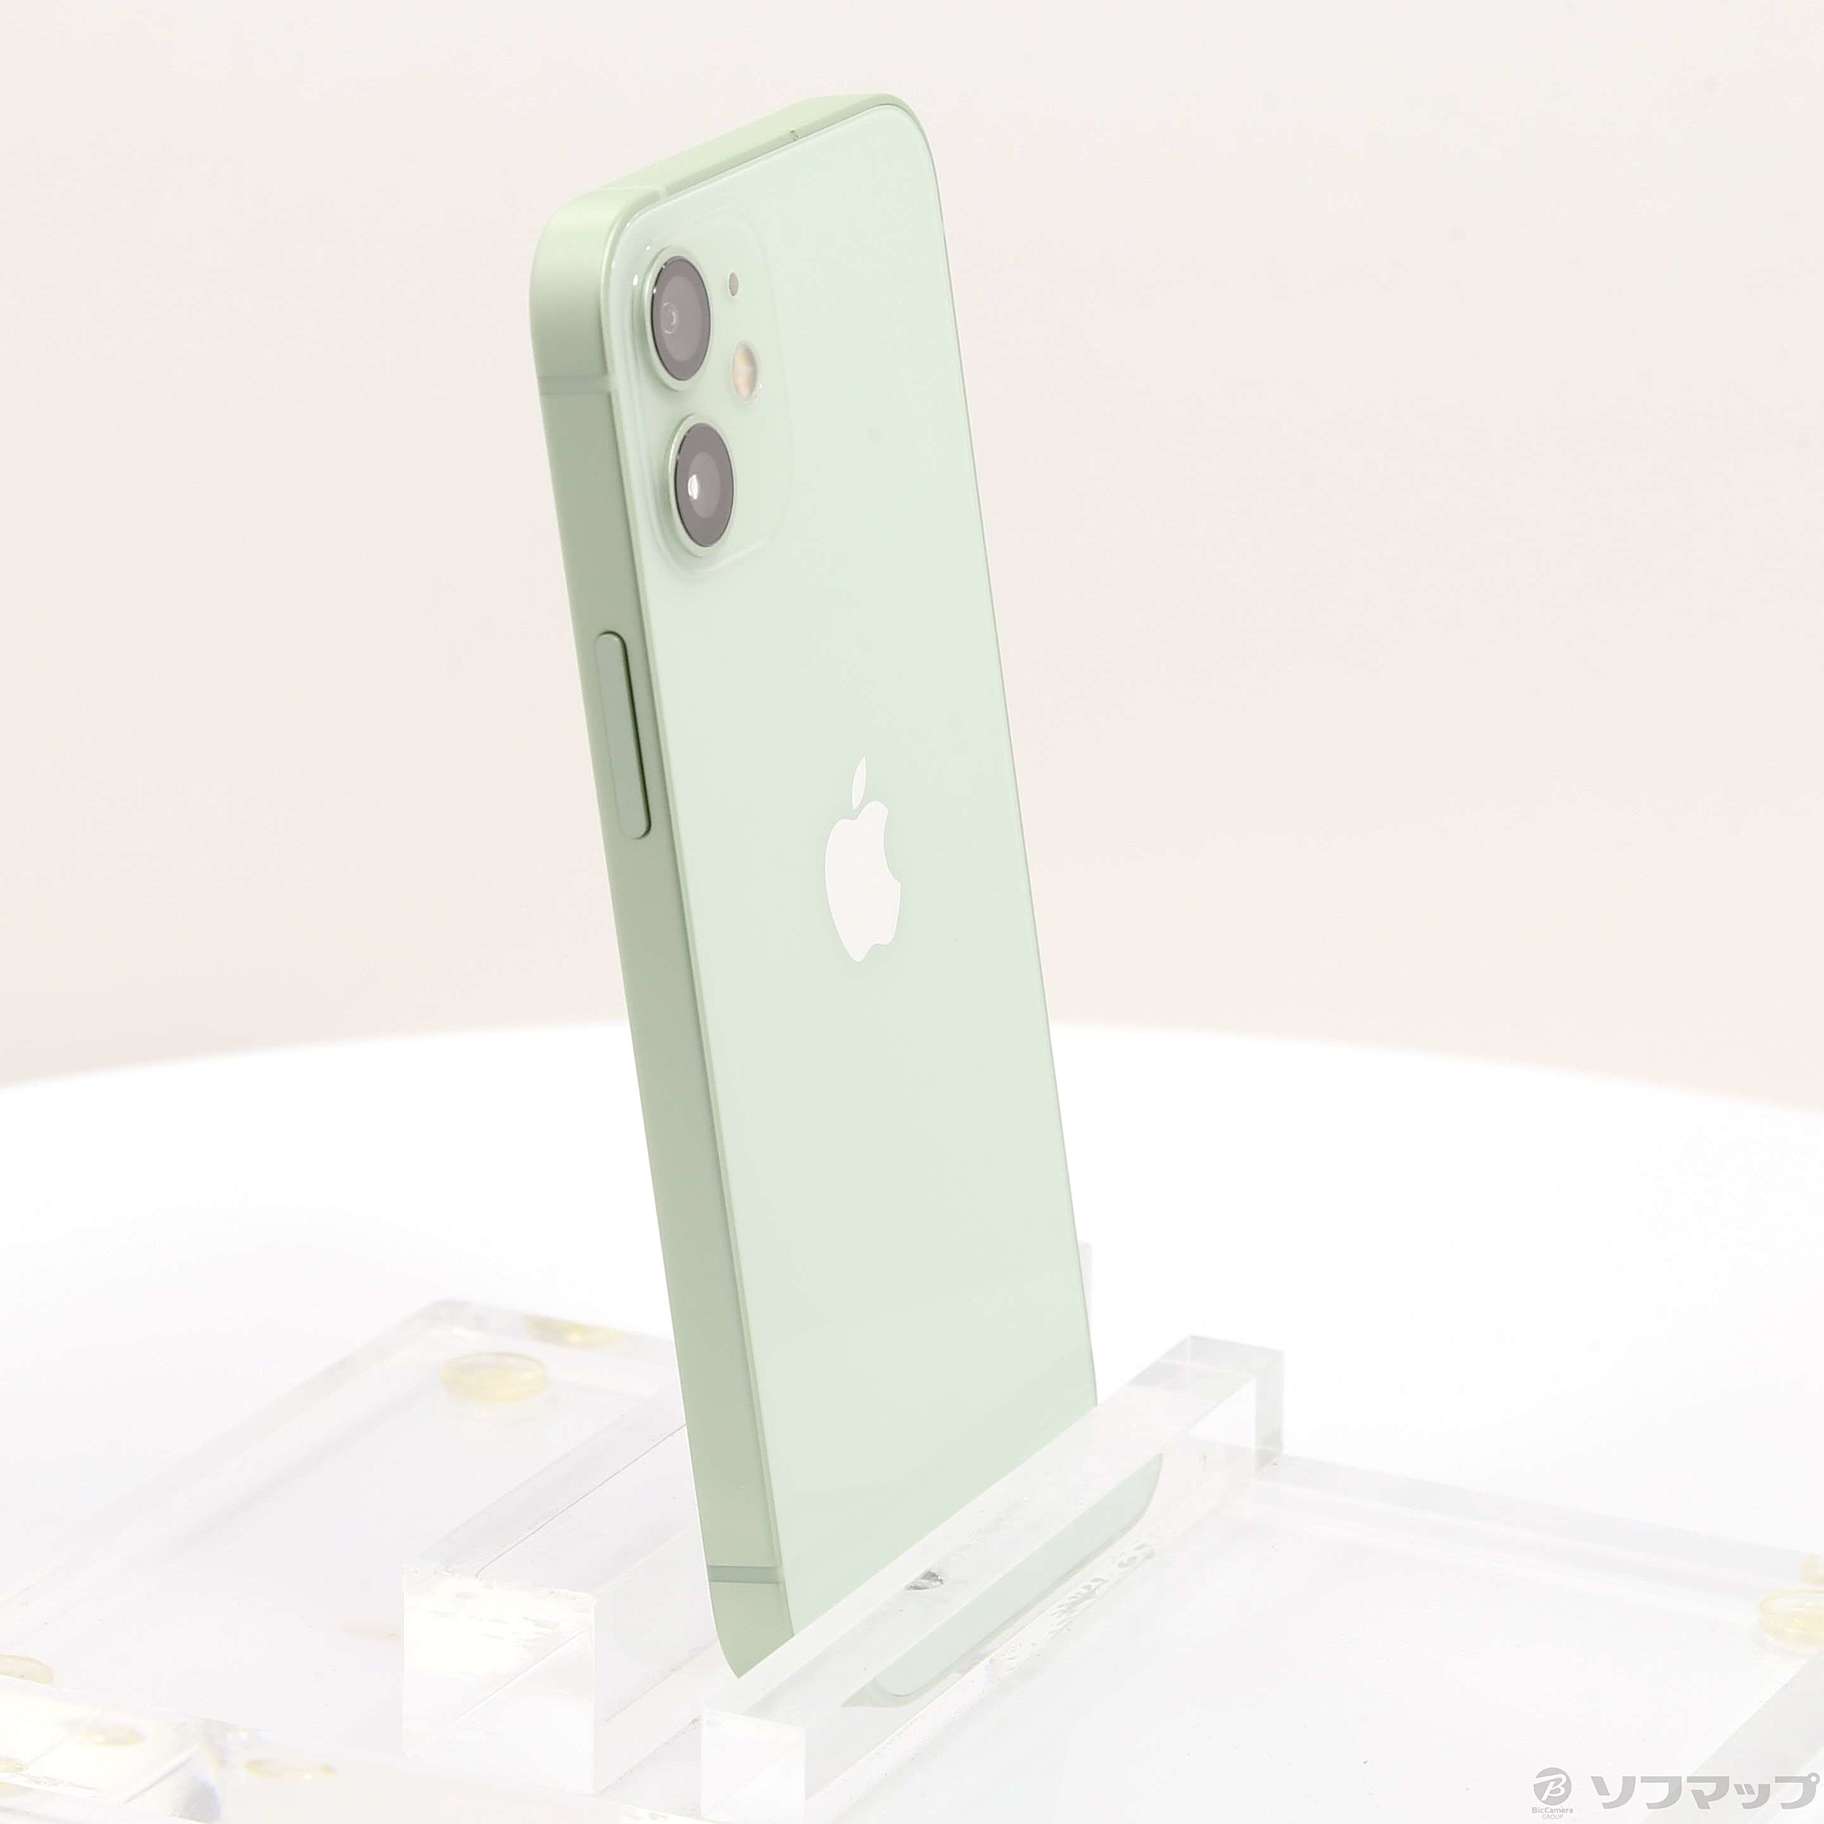 キムリカン様専用iPhone 12 mini 64GB simフリー green | nate